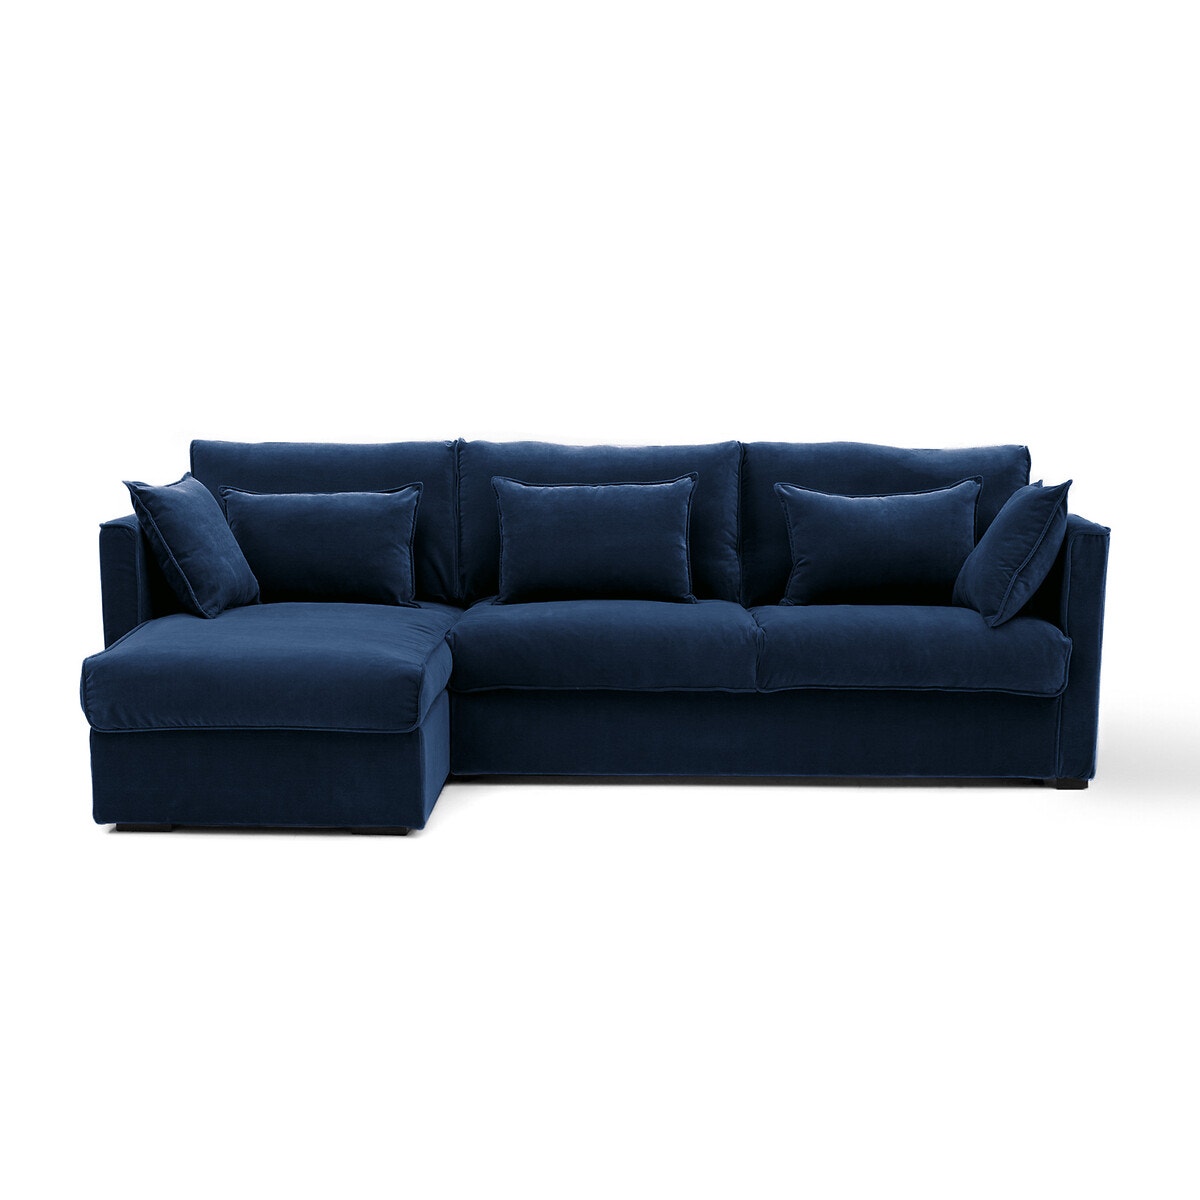 Σπίτι > Έπιπλα > Καθιστικό > Καναπέδες > Γωνιακοί καναπέδες Πτυσσόμενος γωνιακός καναπές από βελούδο Μ98xΠ257xΥ87cm